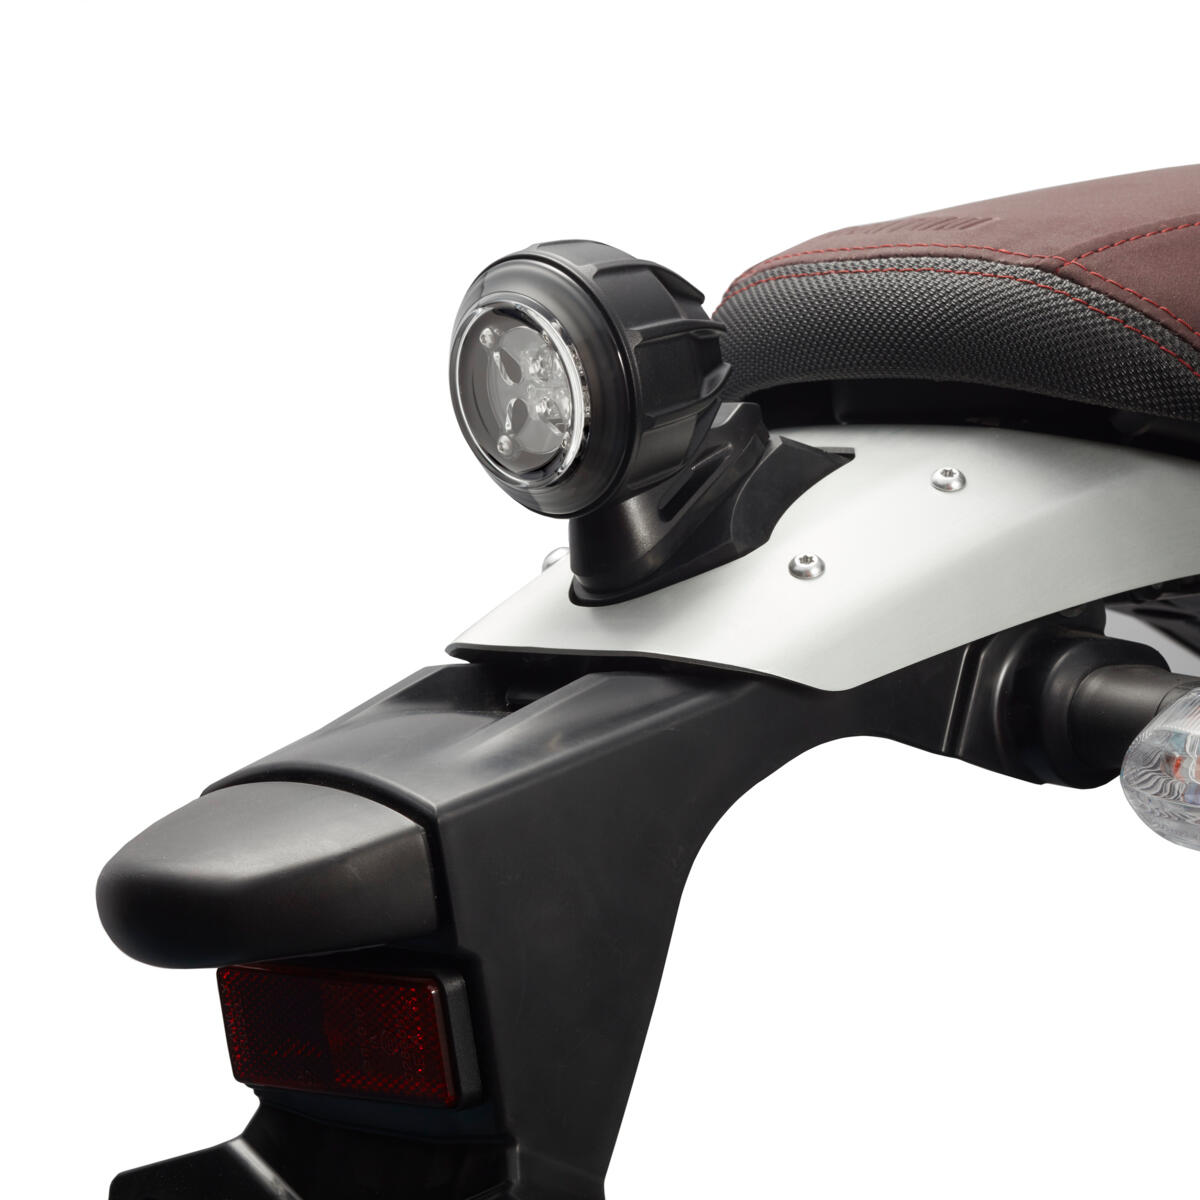 Modern LED hátsó lámpa, amely modern jellegű, mégis autentikus megjelenést biztosít motorkerékpárodnak.